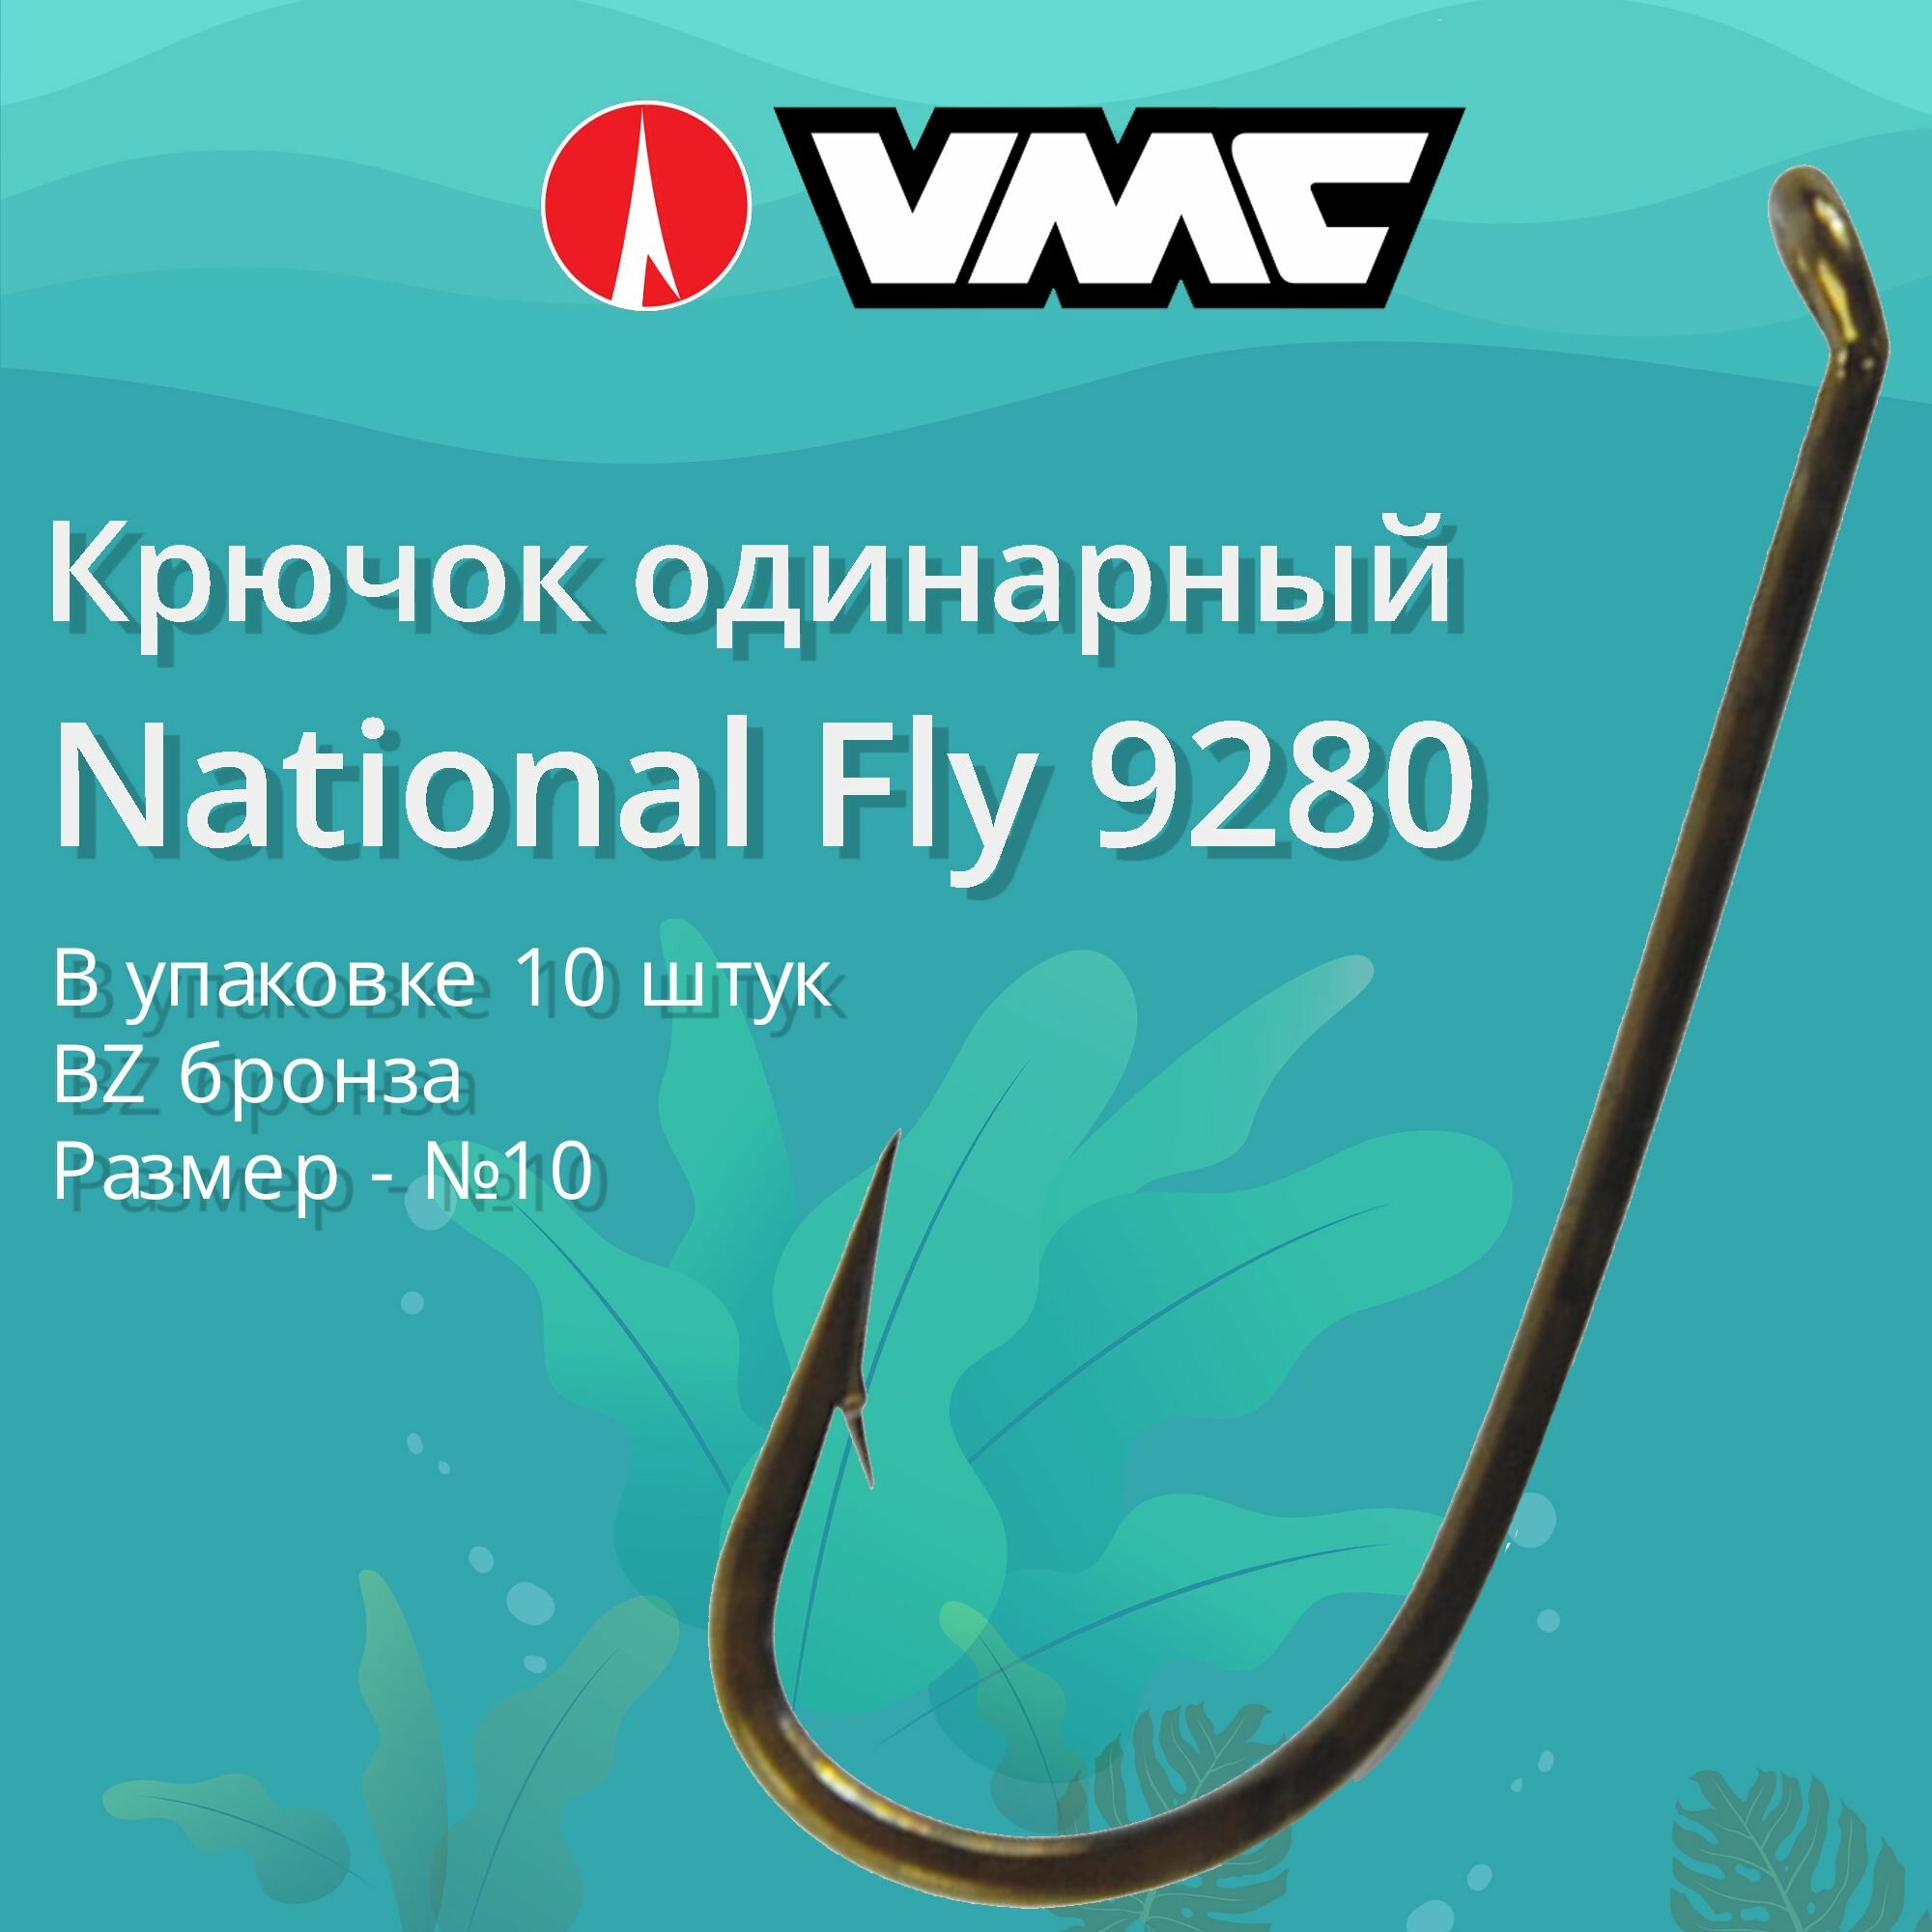 Крючки для рыбалки (одинарный) VMC National Fly 9280 BZ (бронза) №10 упаковка 10 штук